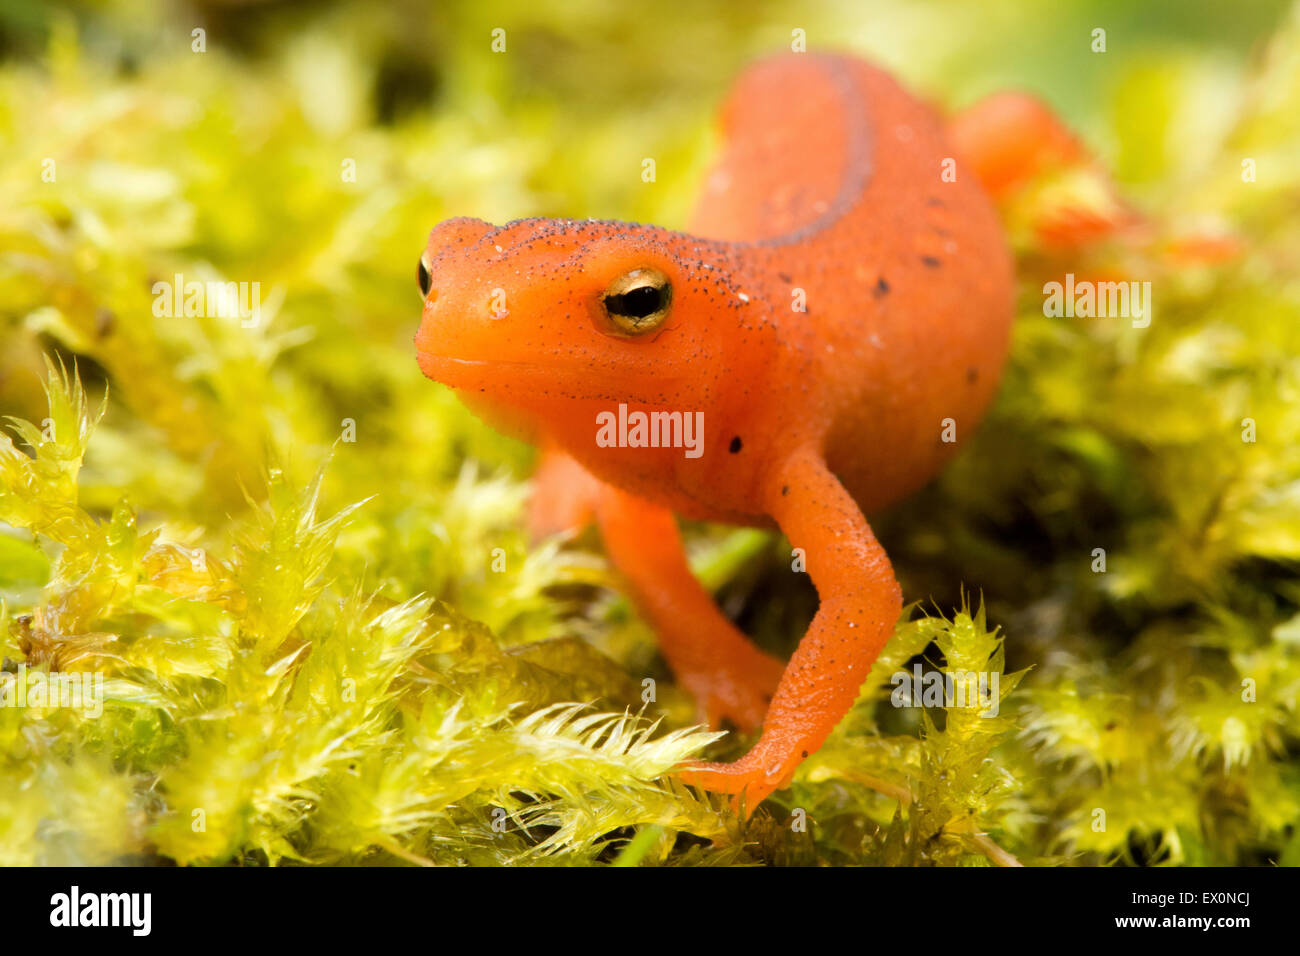 orange salamanders